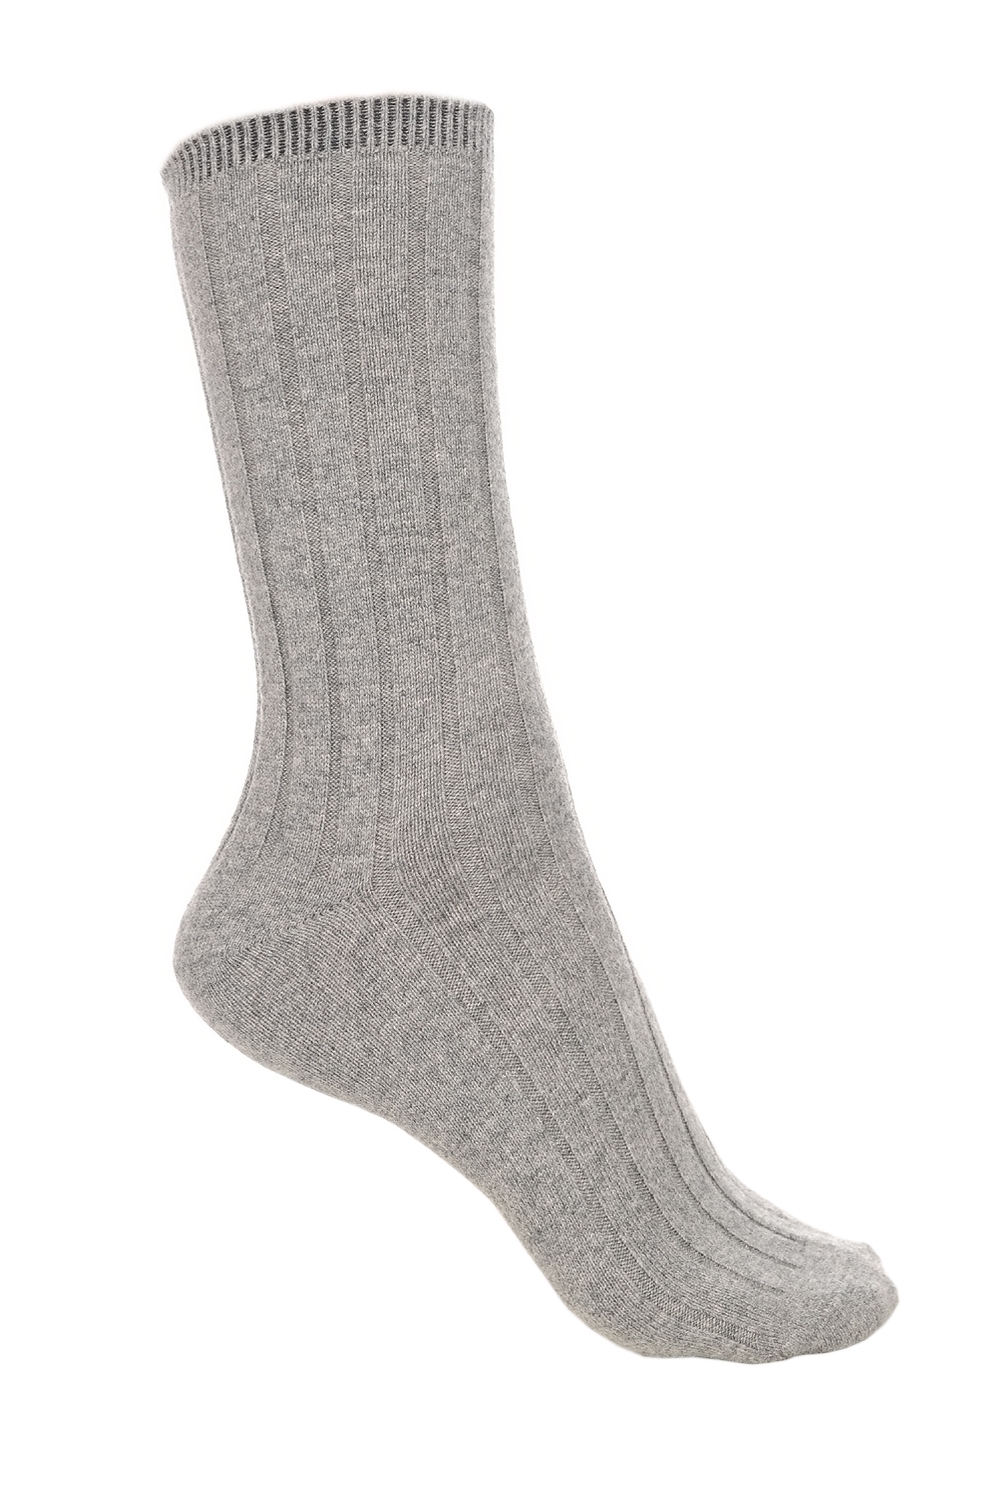 Cachemire & Elasthanne accessoires chaussettes dragibus m gris chine 39 42